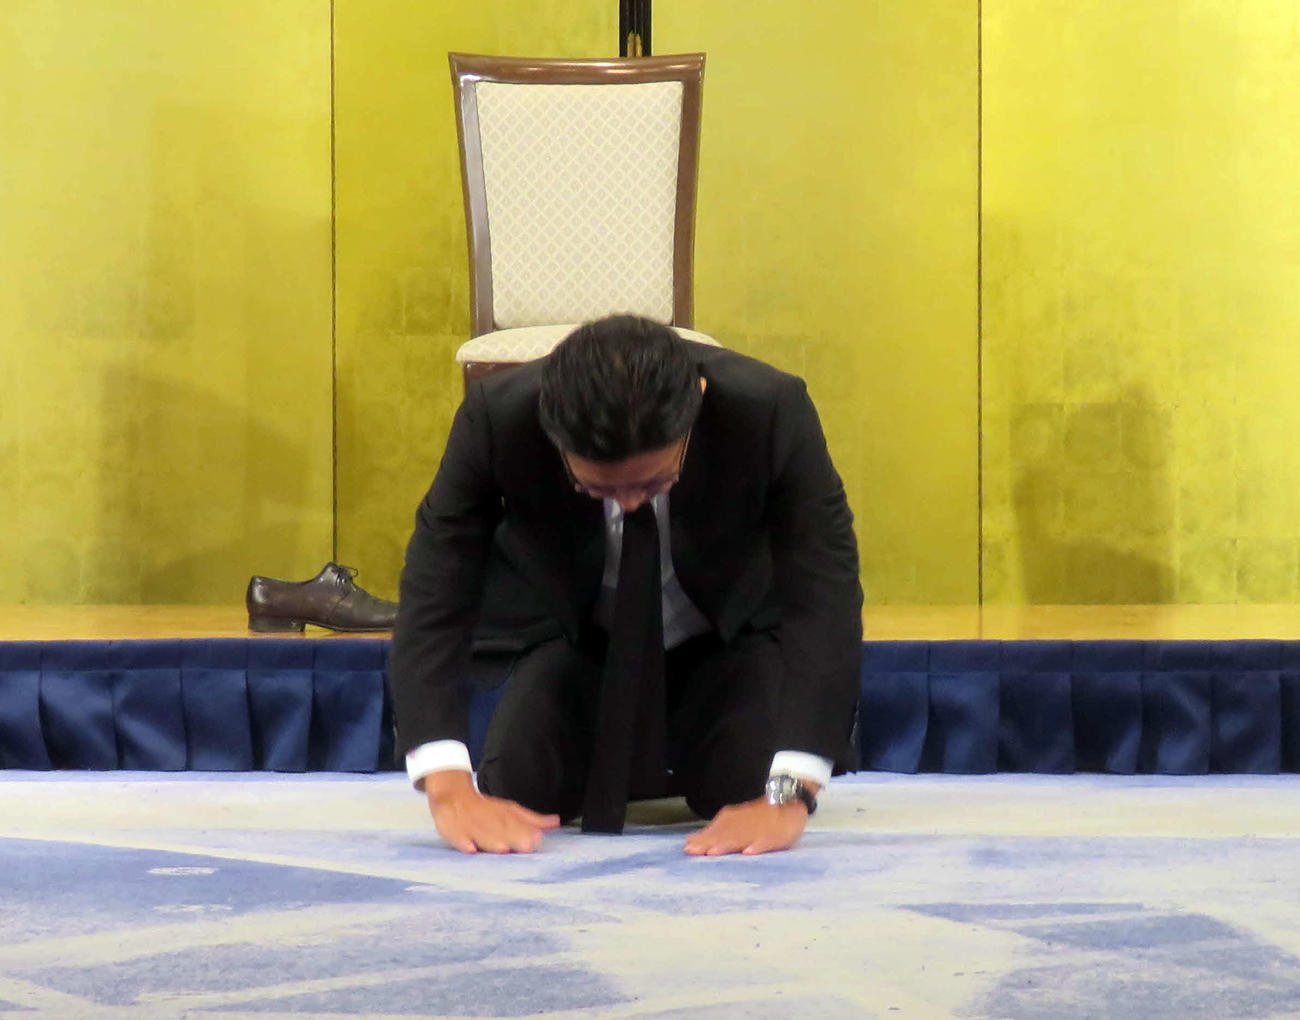 ごぼうの党の奥野代表による花束投げ捨てに関して土下座で謝罪したRIZINの榊原信行CEO